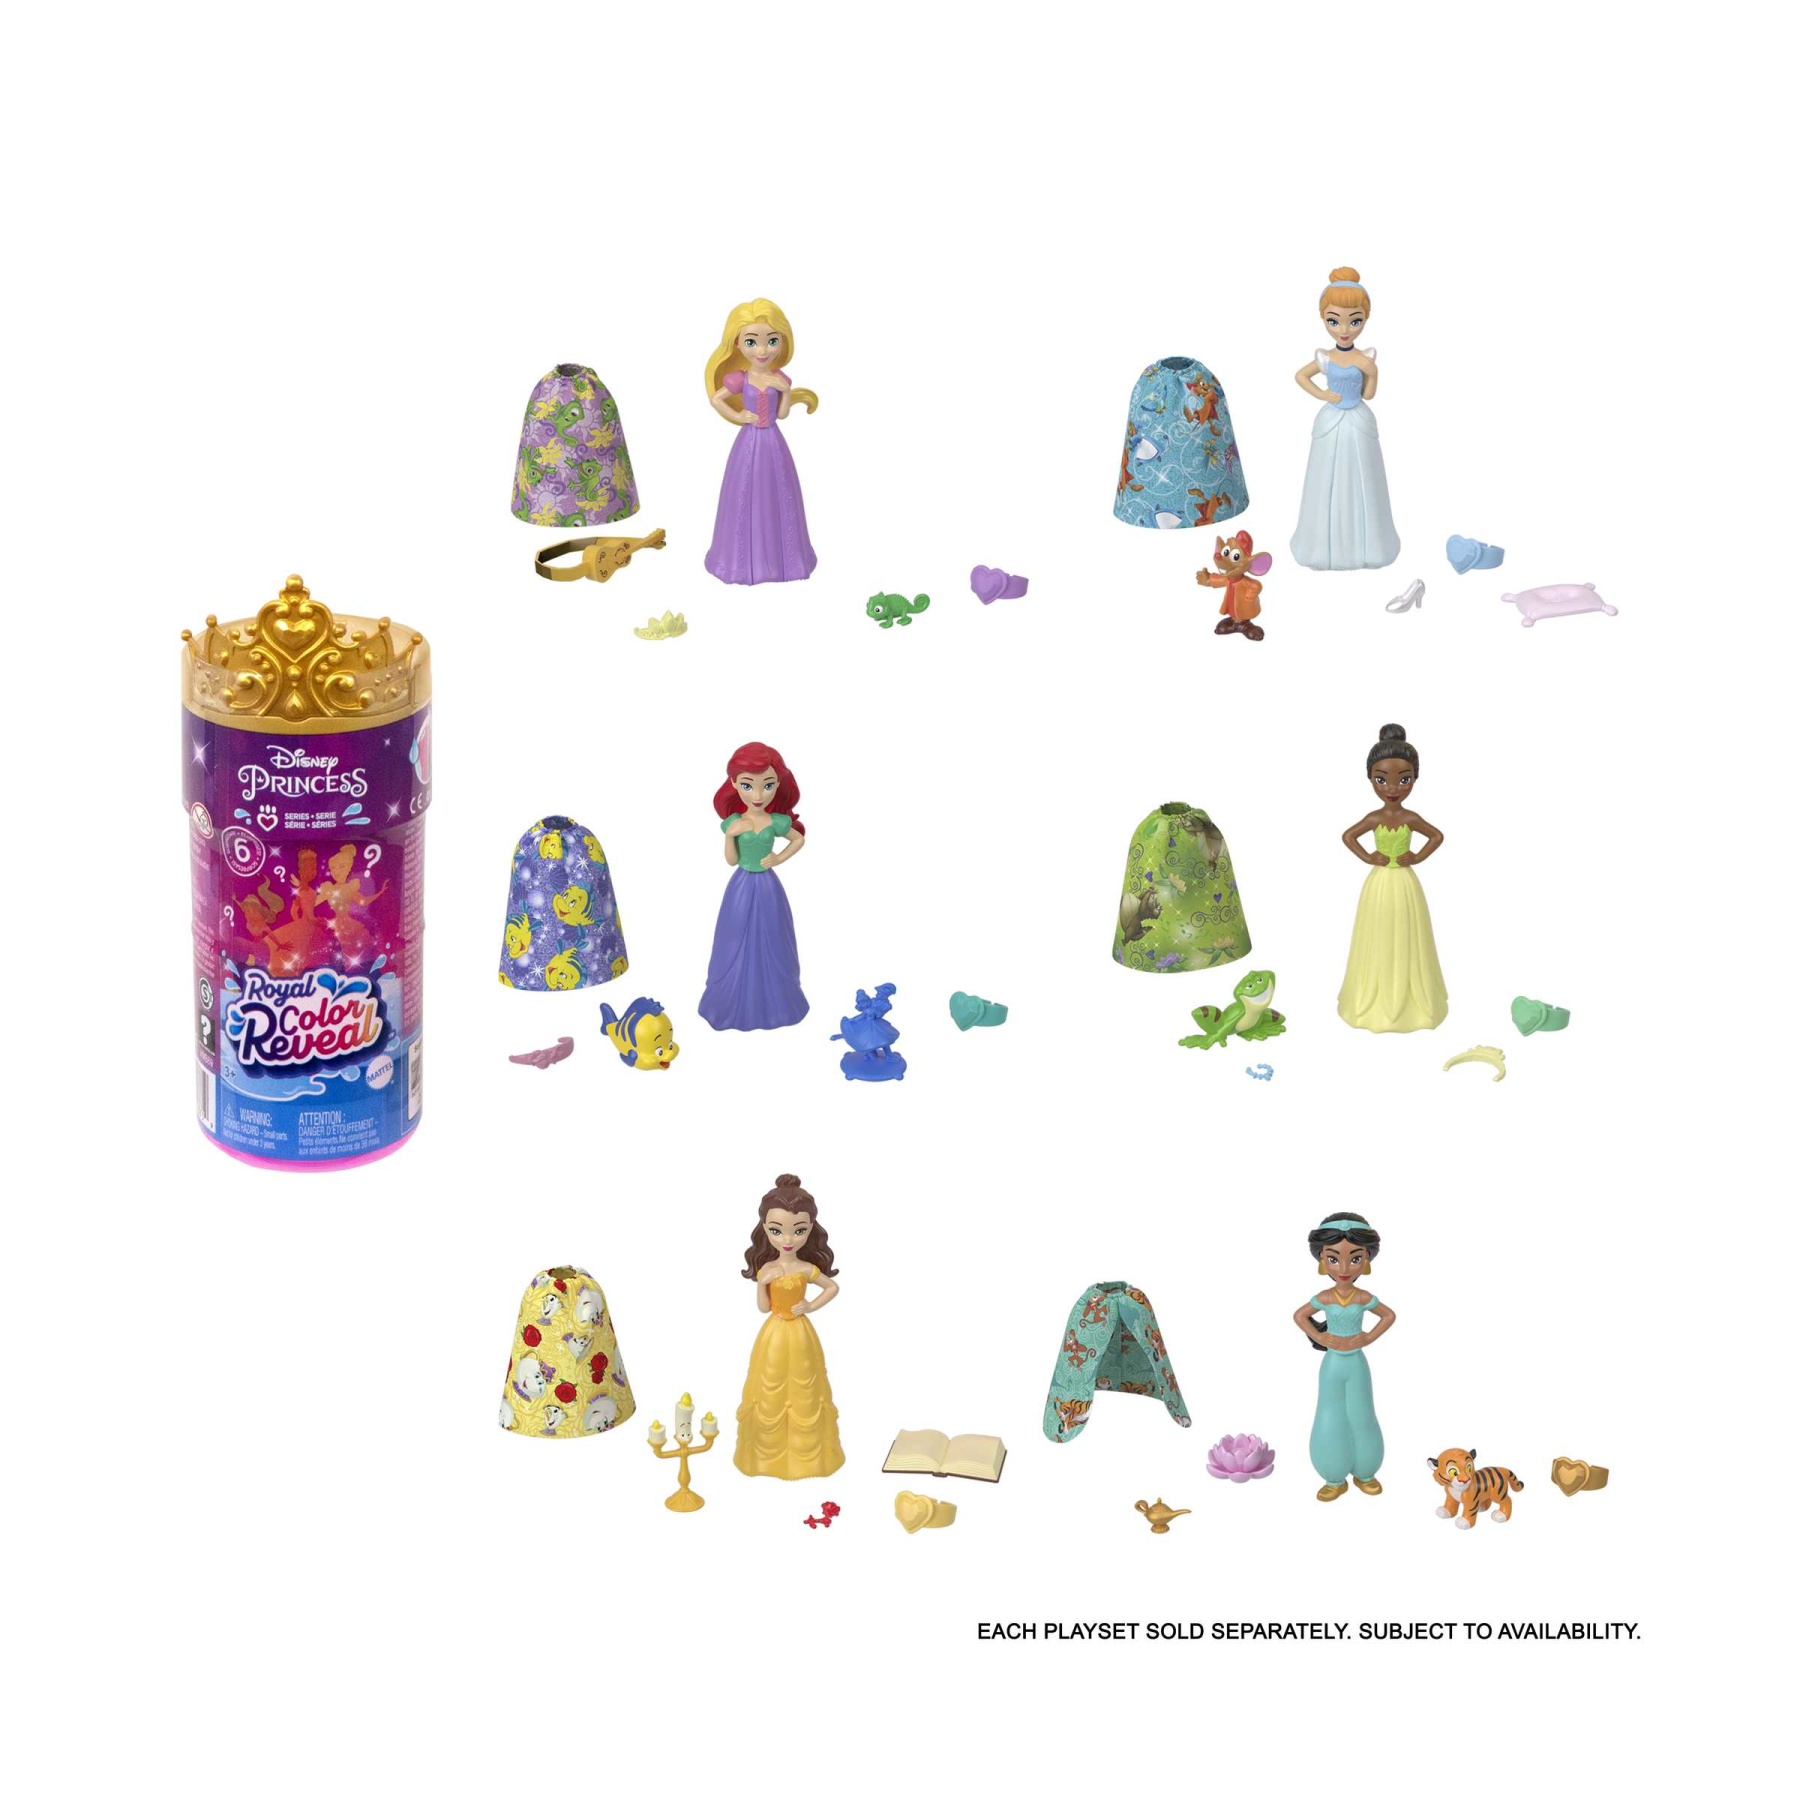 Disney princess - royal color reveal, bambola con 6 sorprese da scoprire tra cui un personaggio, ispirata ai film disney, giocattolo per bambini, 3+ anni, hmb69 - DISNEY PRINCESS